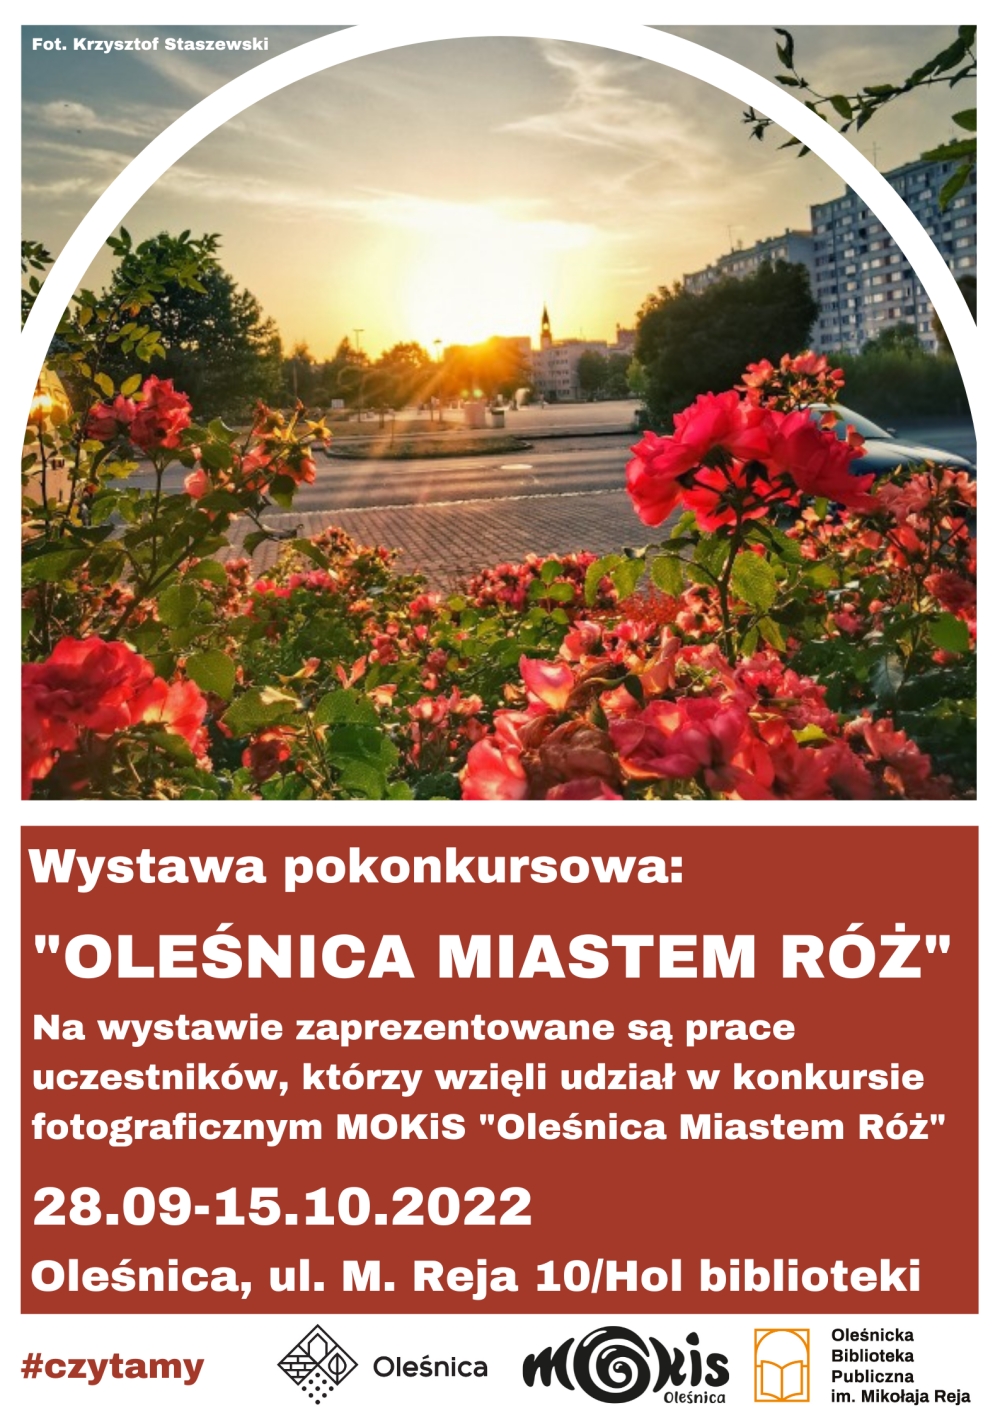 Plakat promujący wystawę pokonkursową "Oleśnica miastem róż"